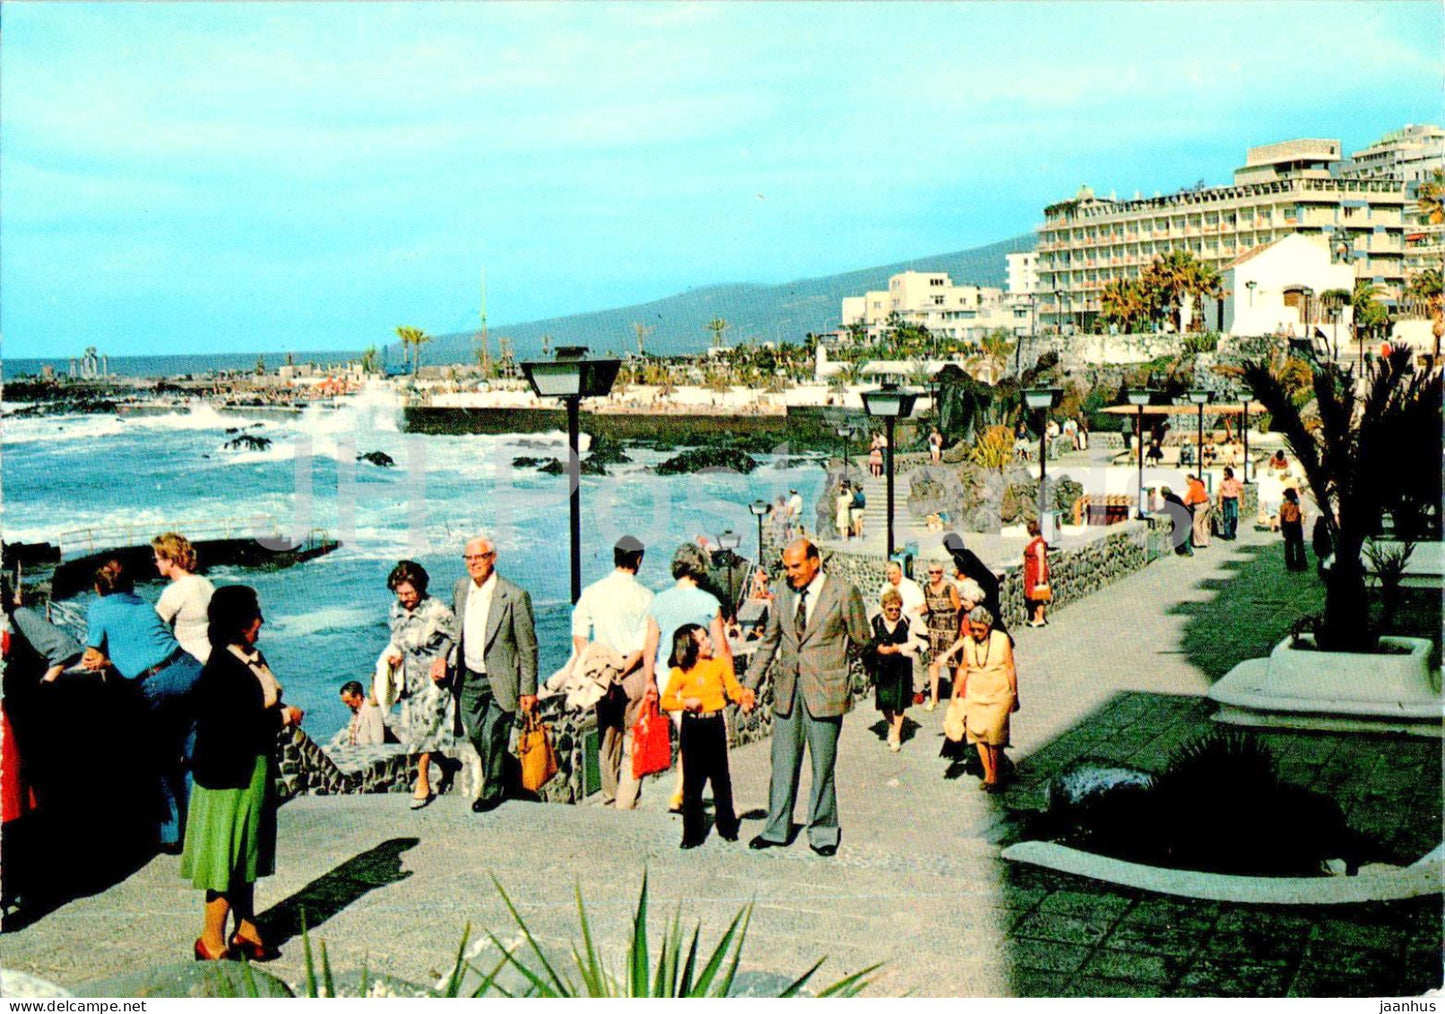 Puerto de la Cruz - Tenerife - Zona de San Telmo - 1 - 53 - Spain - unused - JH Postcards